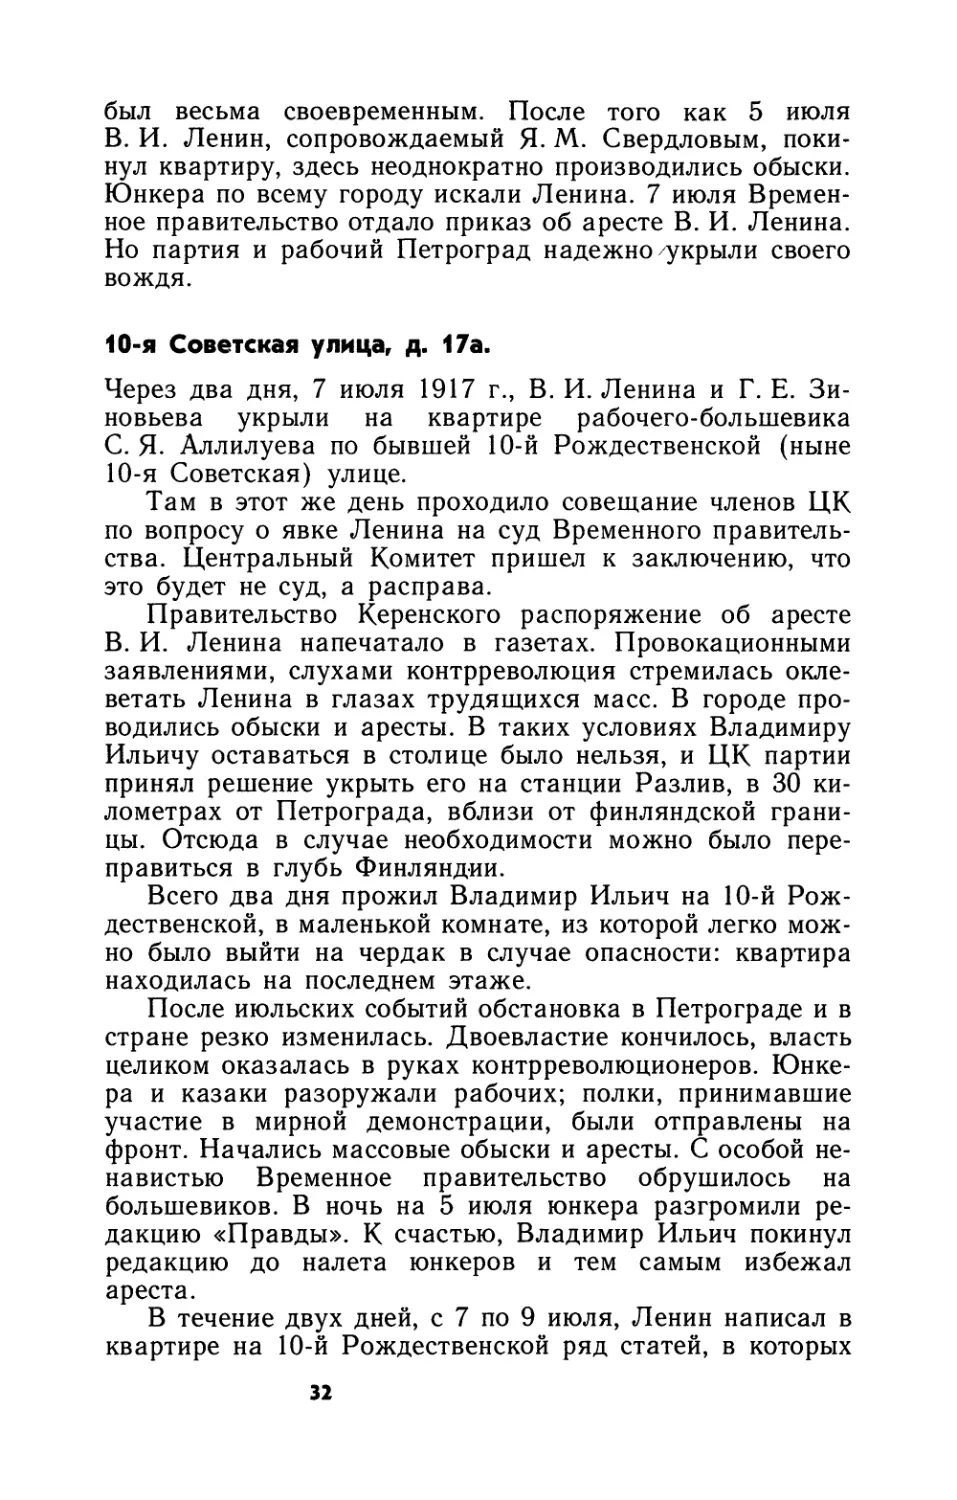 10-я Советская ул., д. 17а